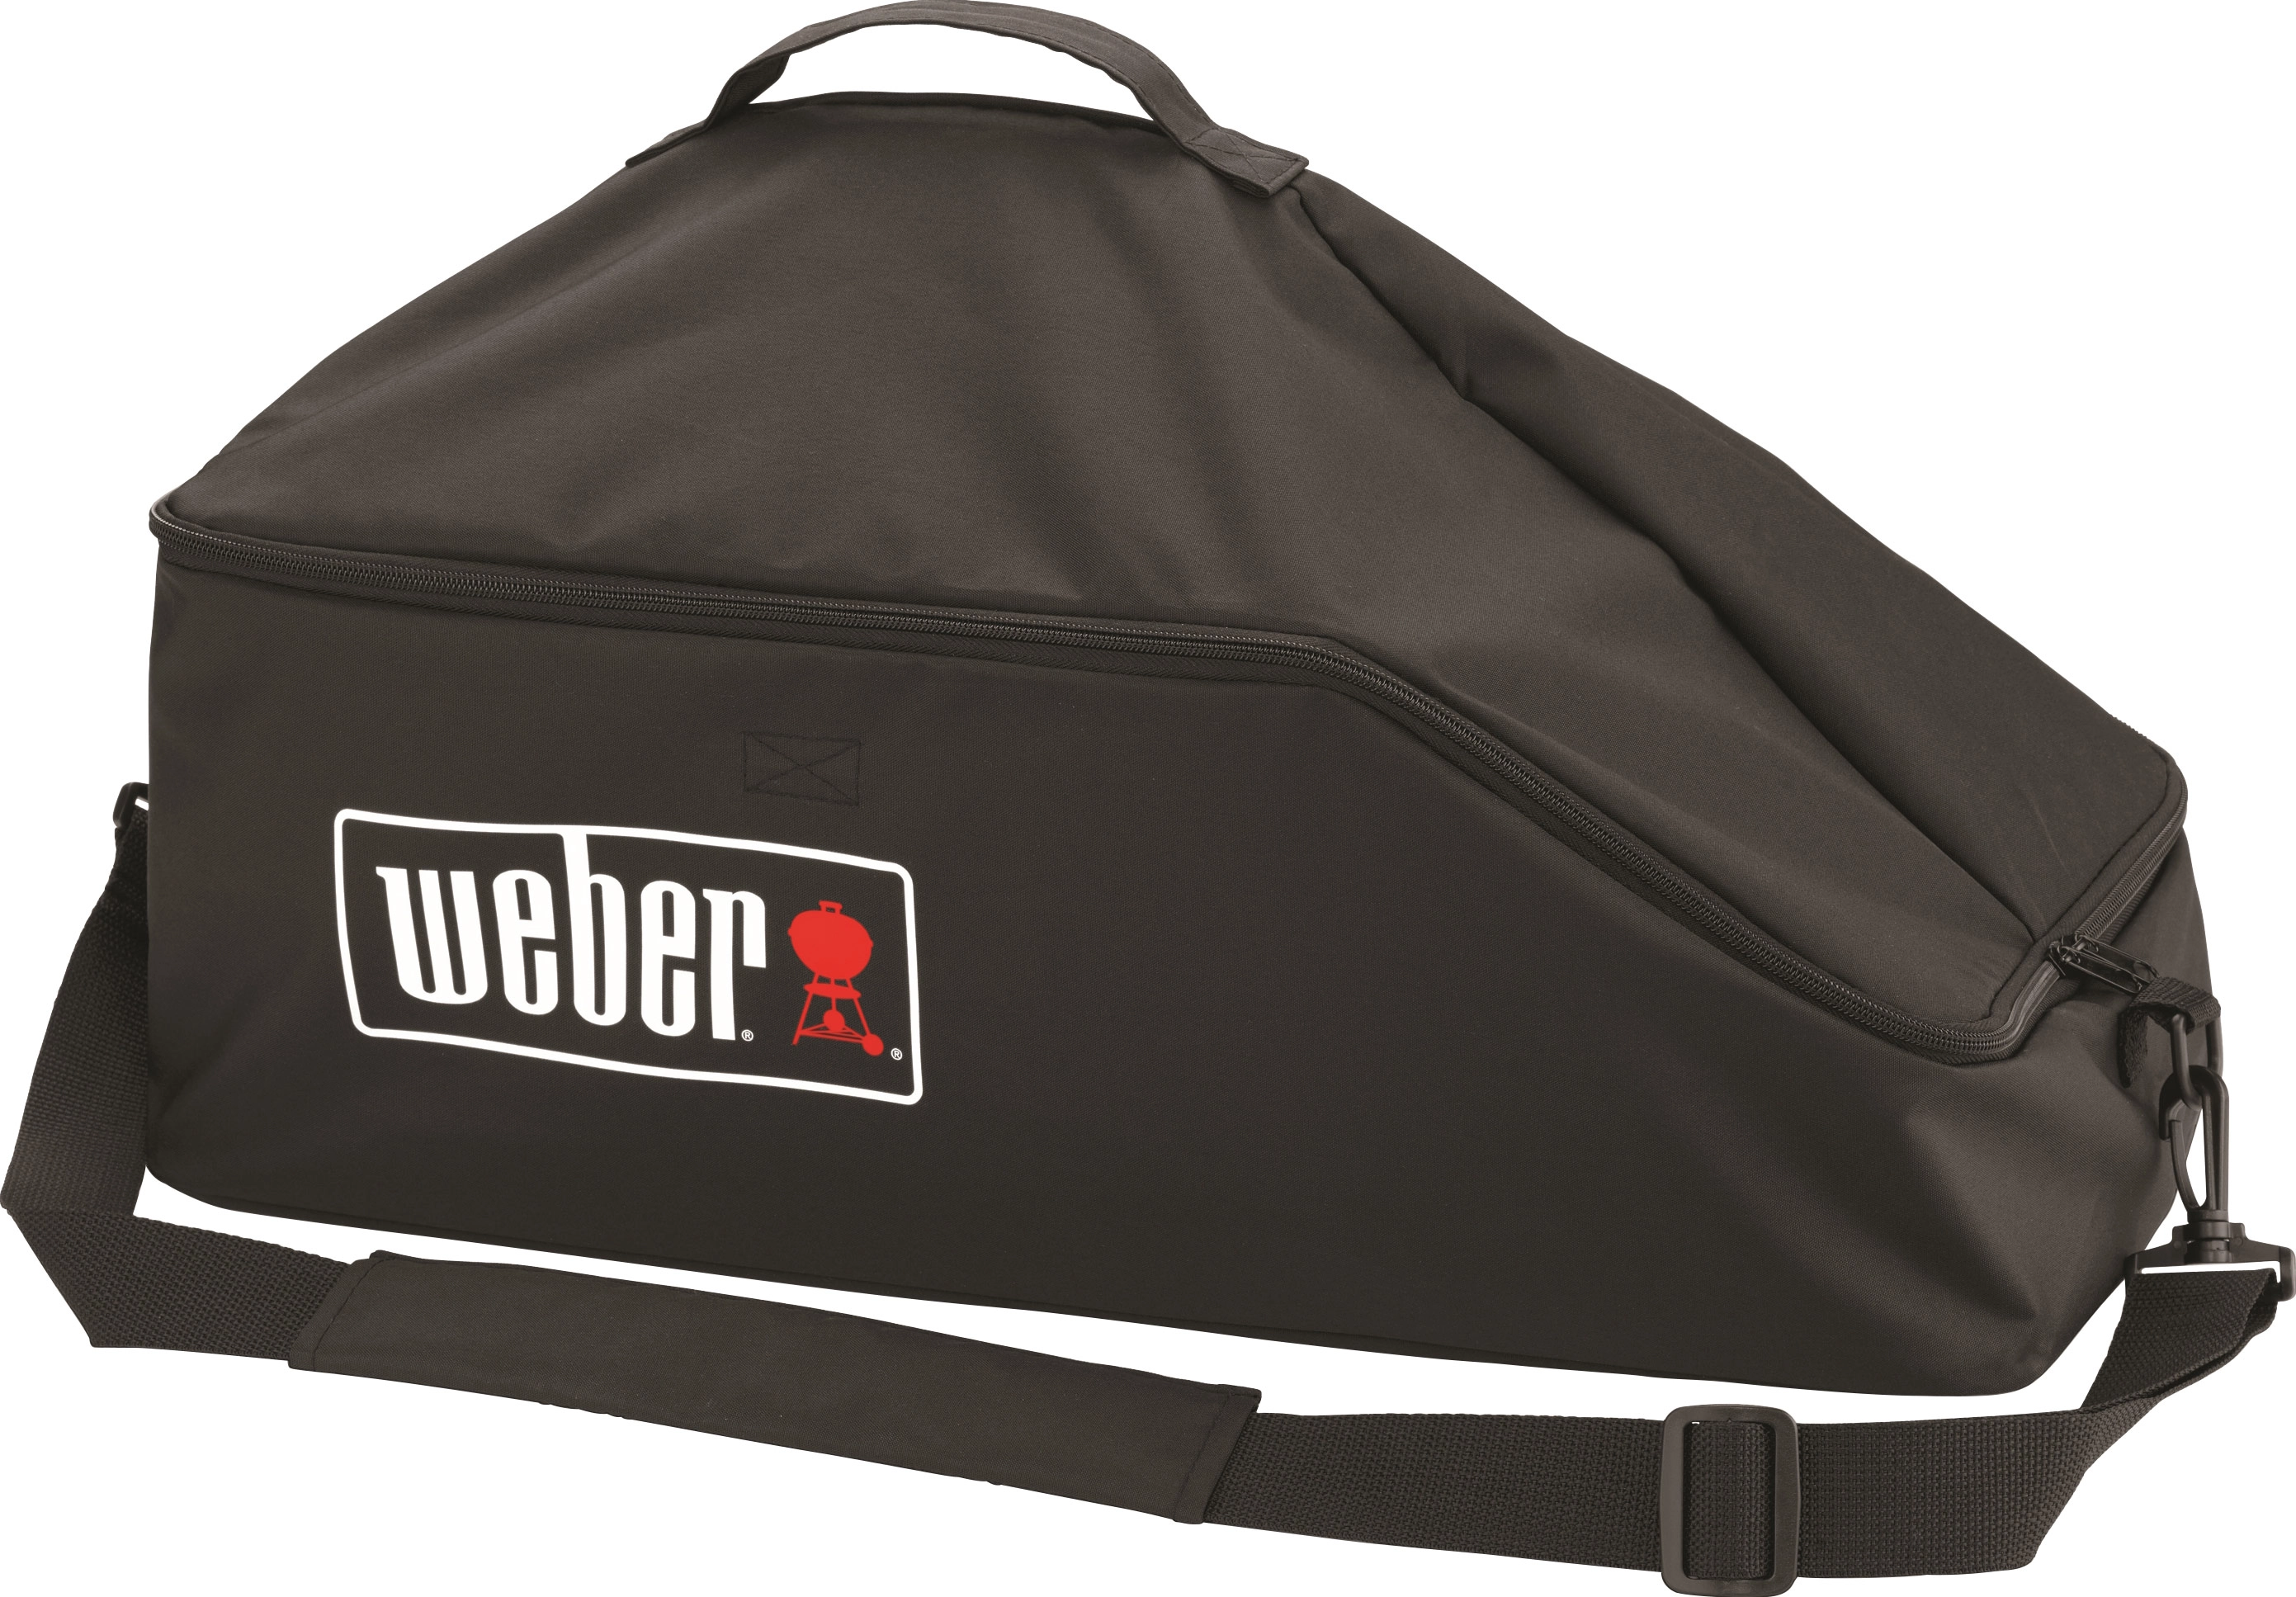 Weber Transporttasche Premium für Go Anywhere kaufen bei OBI